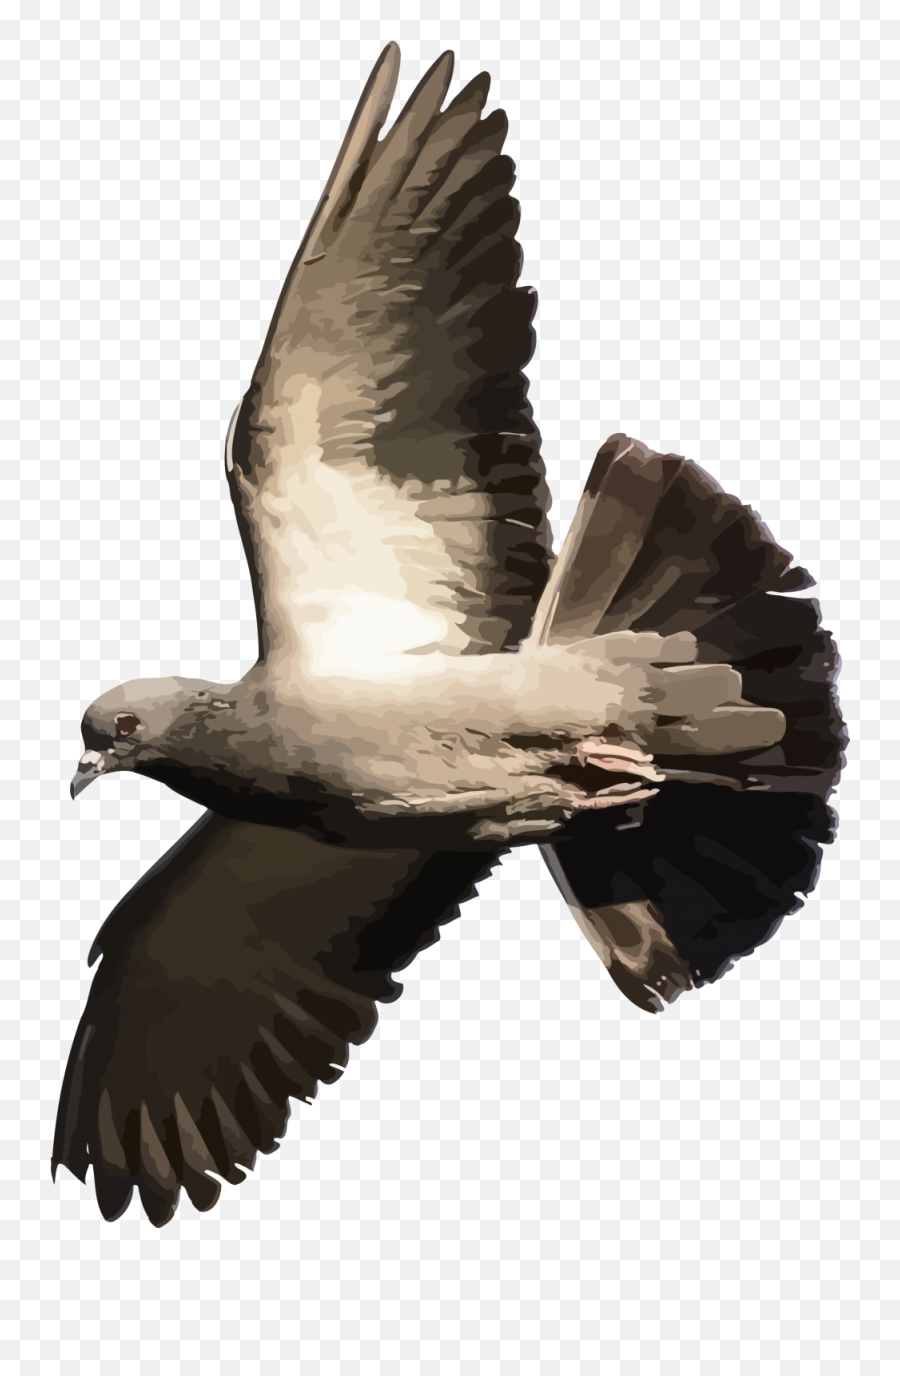 Download - Pigeonpngtransparentimagestransparent Flying Bird Pigeon Transparent Png,Pigeons Png